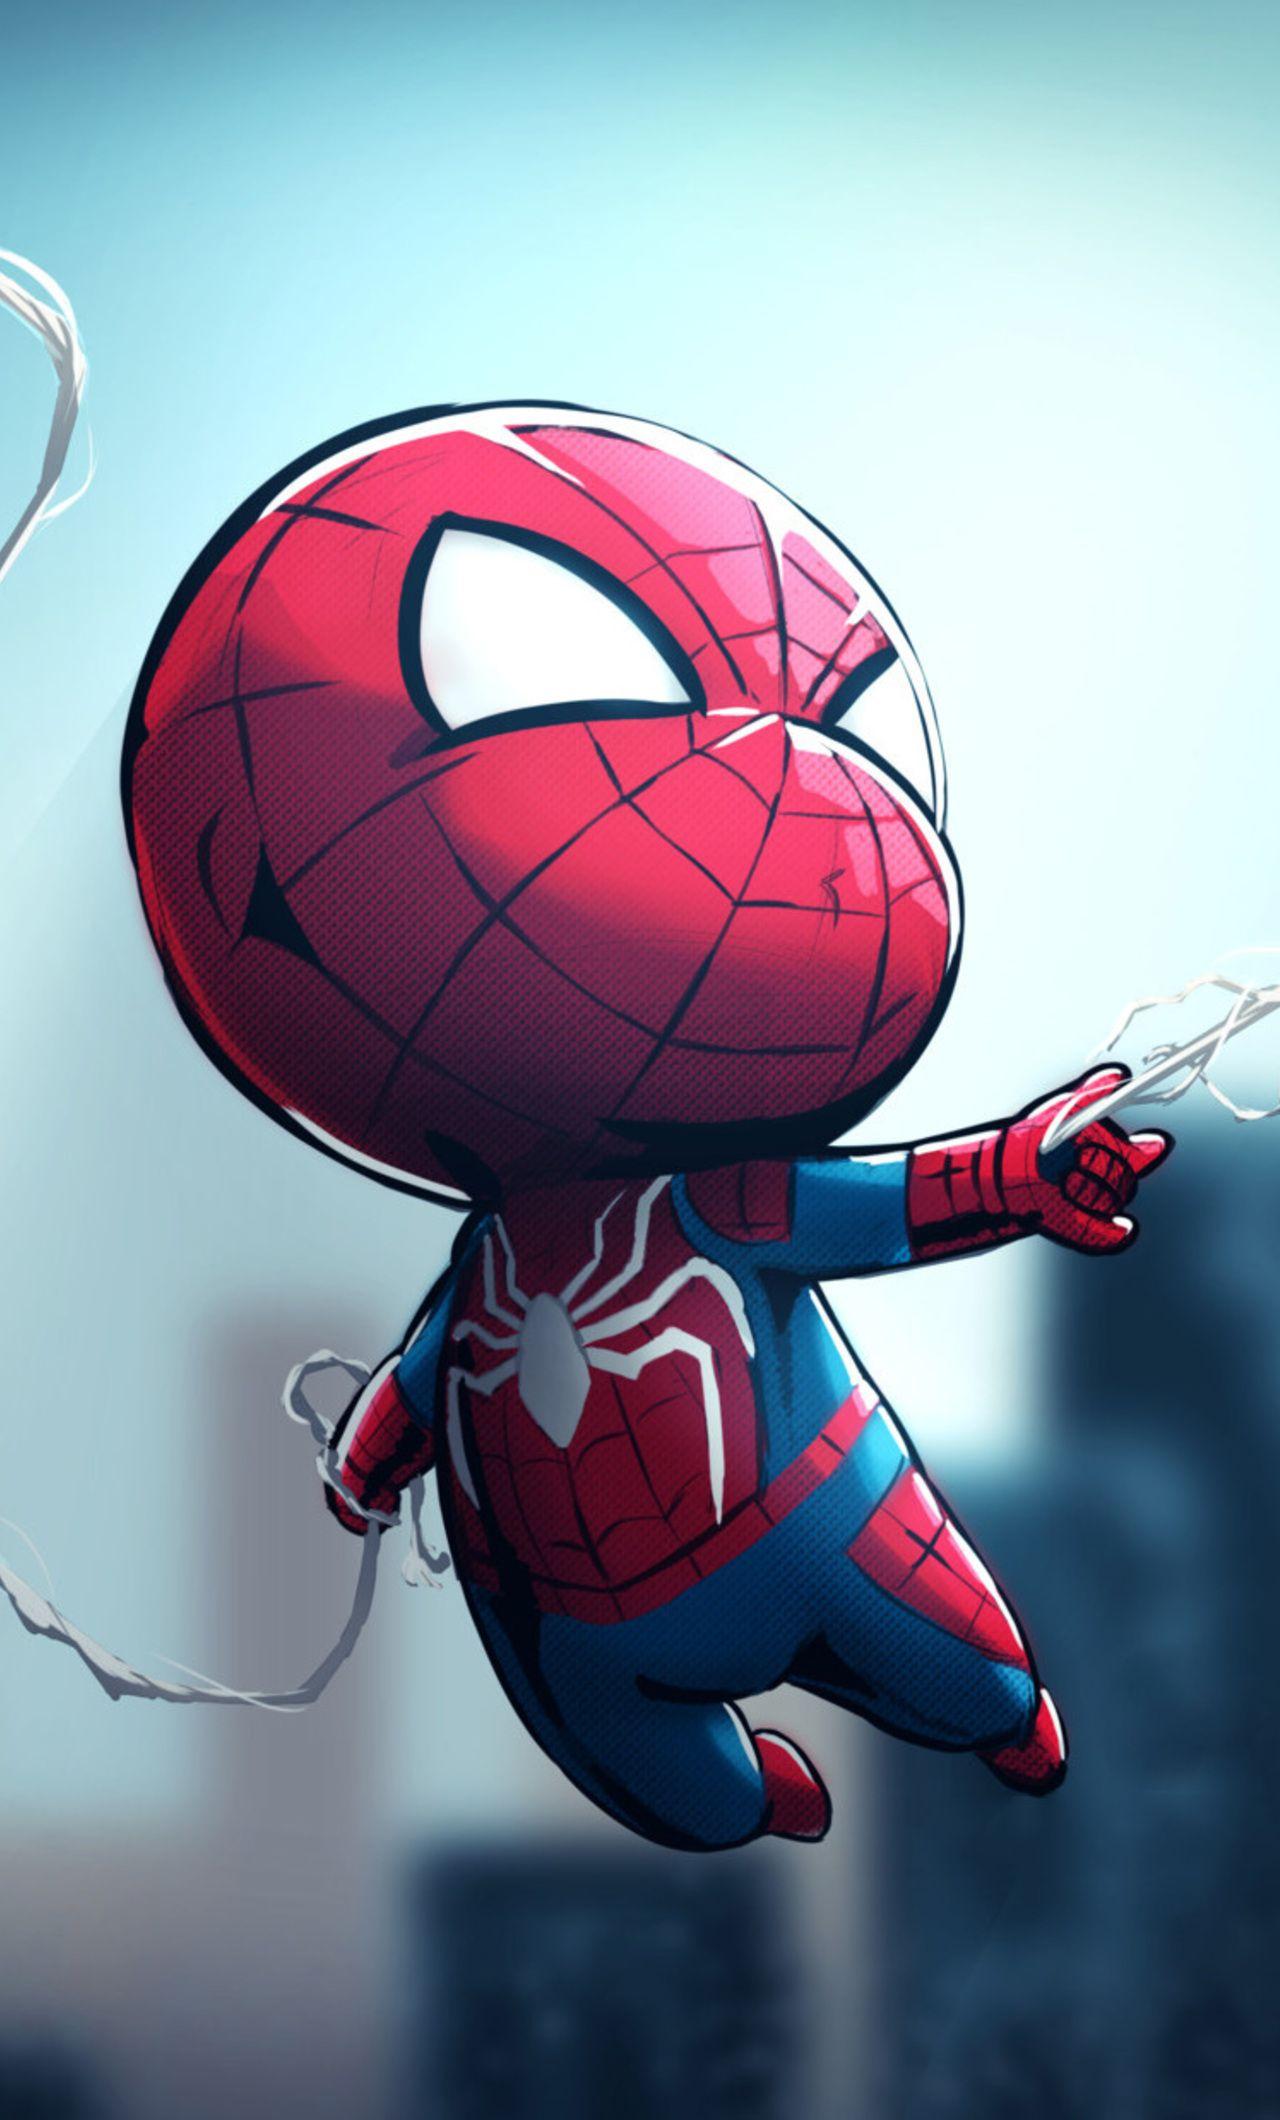 Cute Spiderman Wallpapers - Top Free Cute Spiderman ...